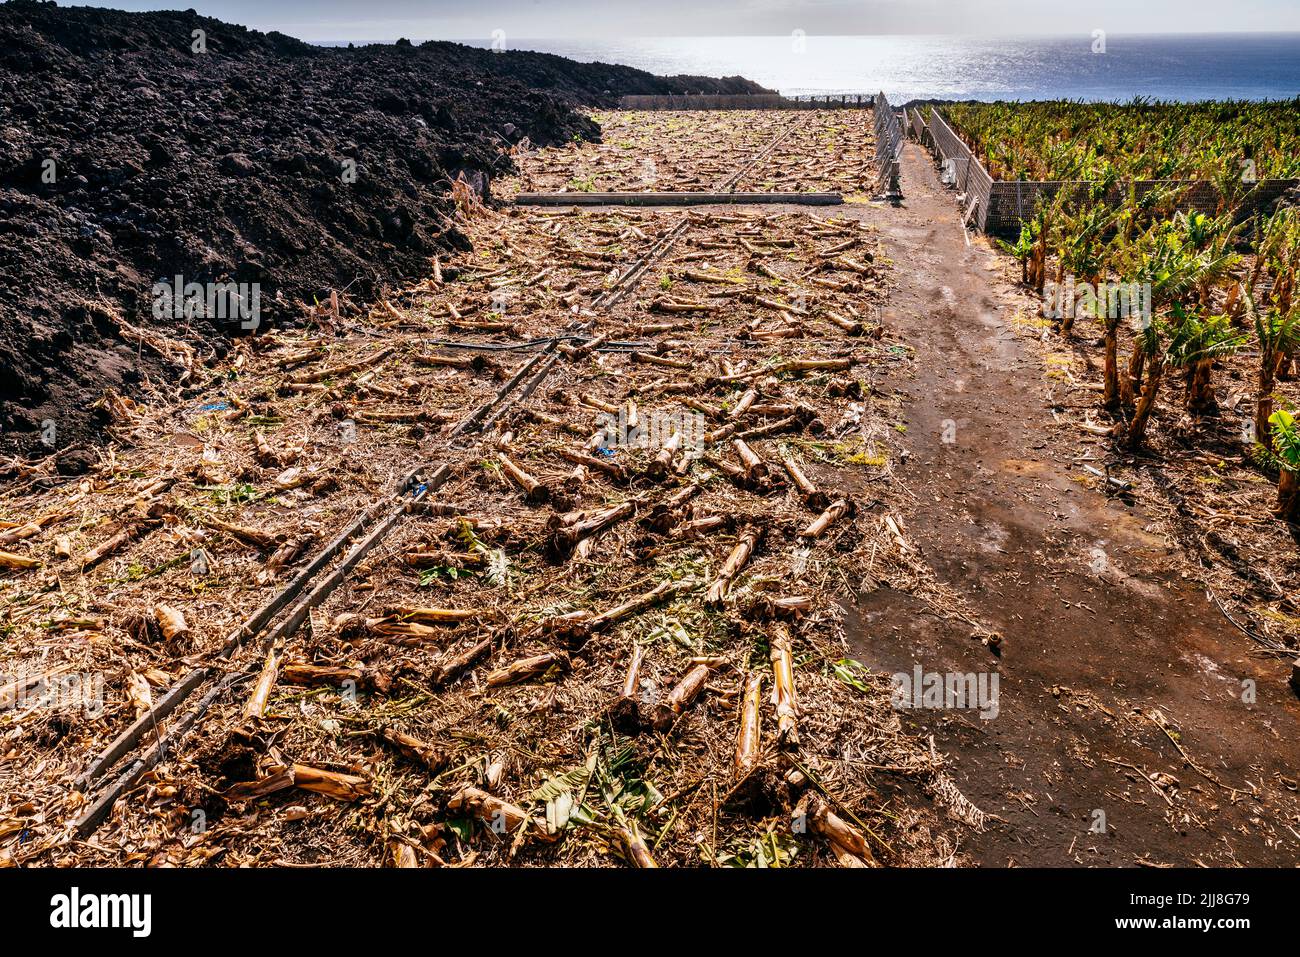 Plantación de plátano canario destruida por el flujo de lava. Destrucción causada por el río de lava en el valle de Aridane. La Palma, Islas Canarias, España Foto de stock